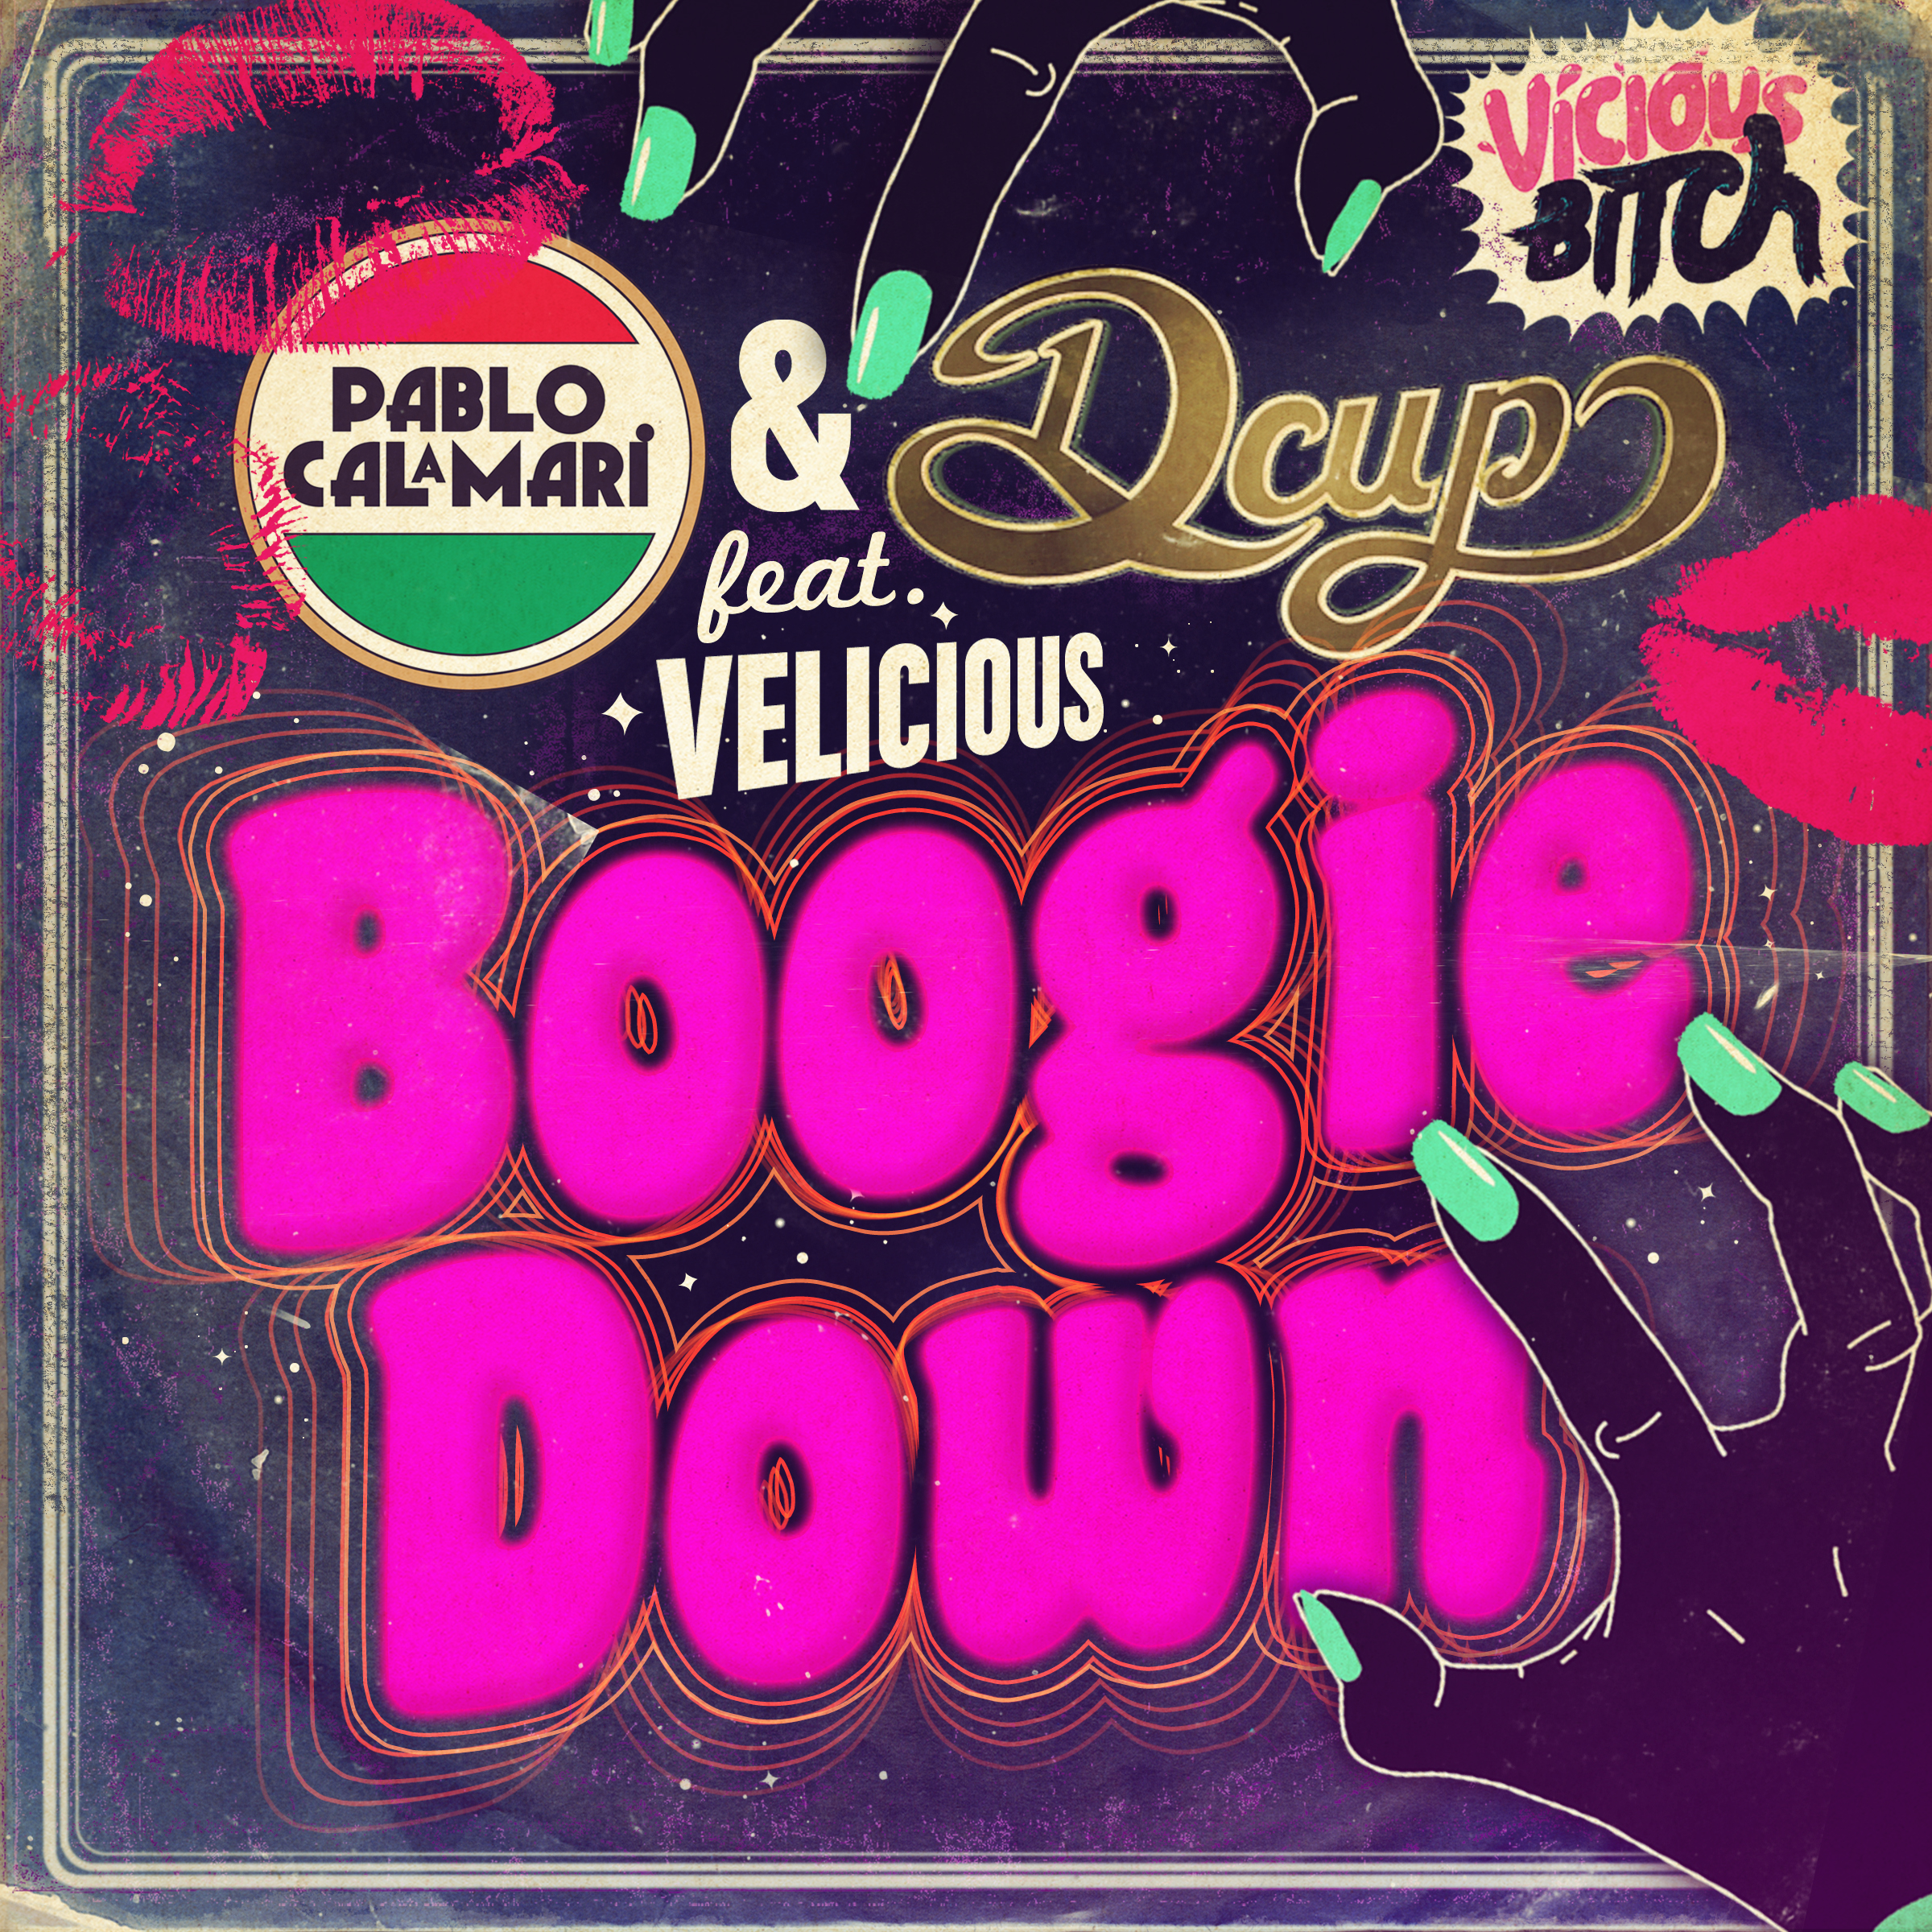 Boogie down dance. Boogie down. Dcup. Boogie down Video.